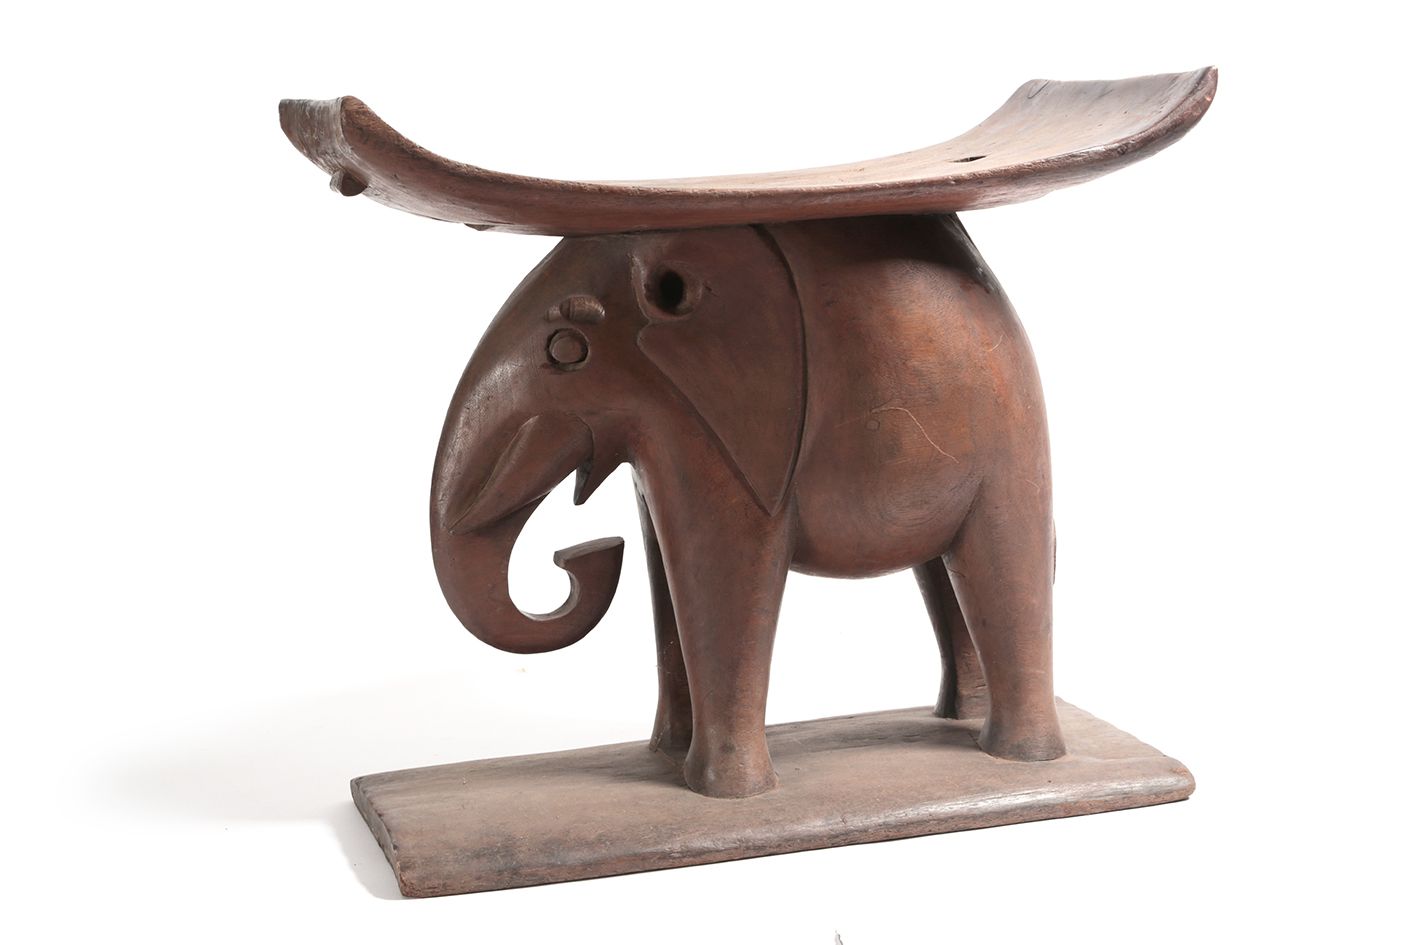 Tabouret Ashanti Hocker, der einen Elefanten darstellt, der den Sitz trägt.

Gha&hellip;